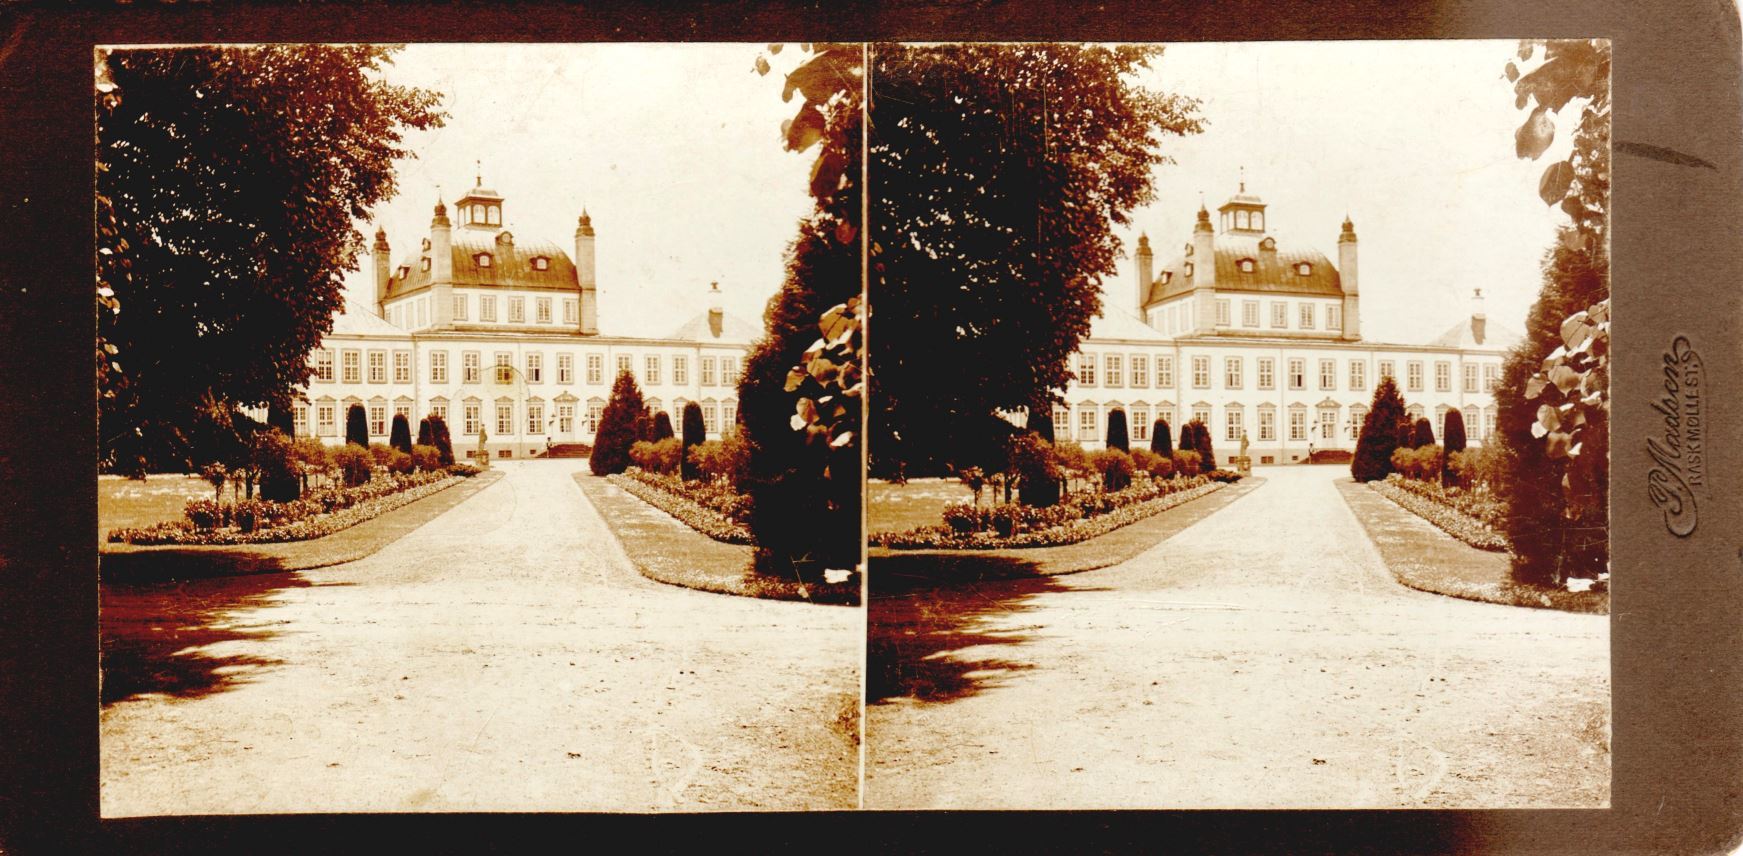 11432.6  Havesiden, Fredensborg Slot cirka 1914.  Fotograf Peter Møller, Rask Mølle